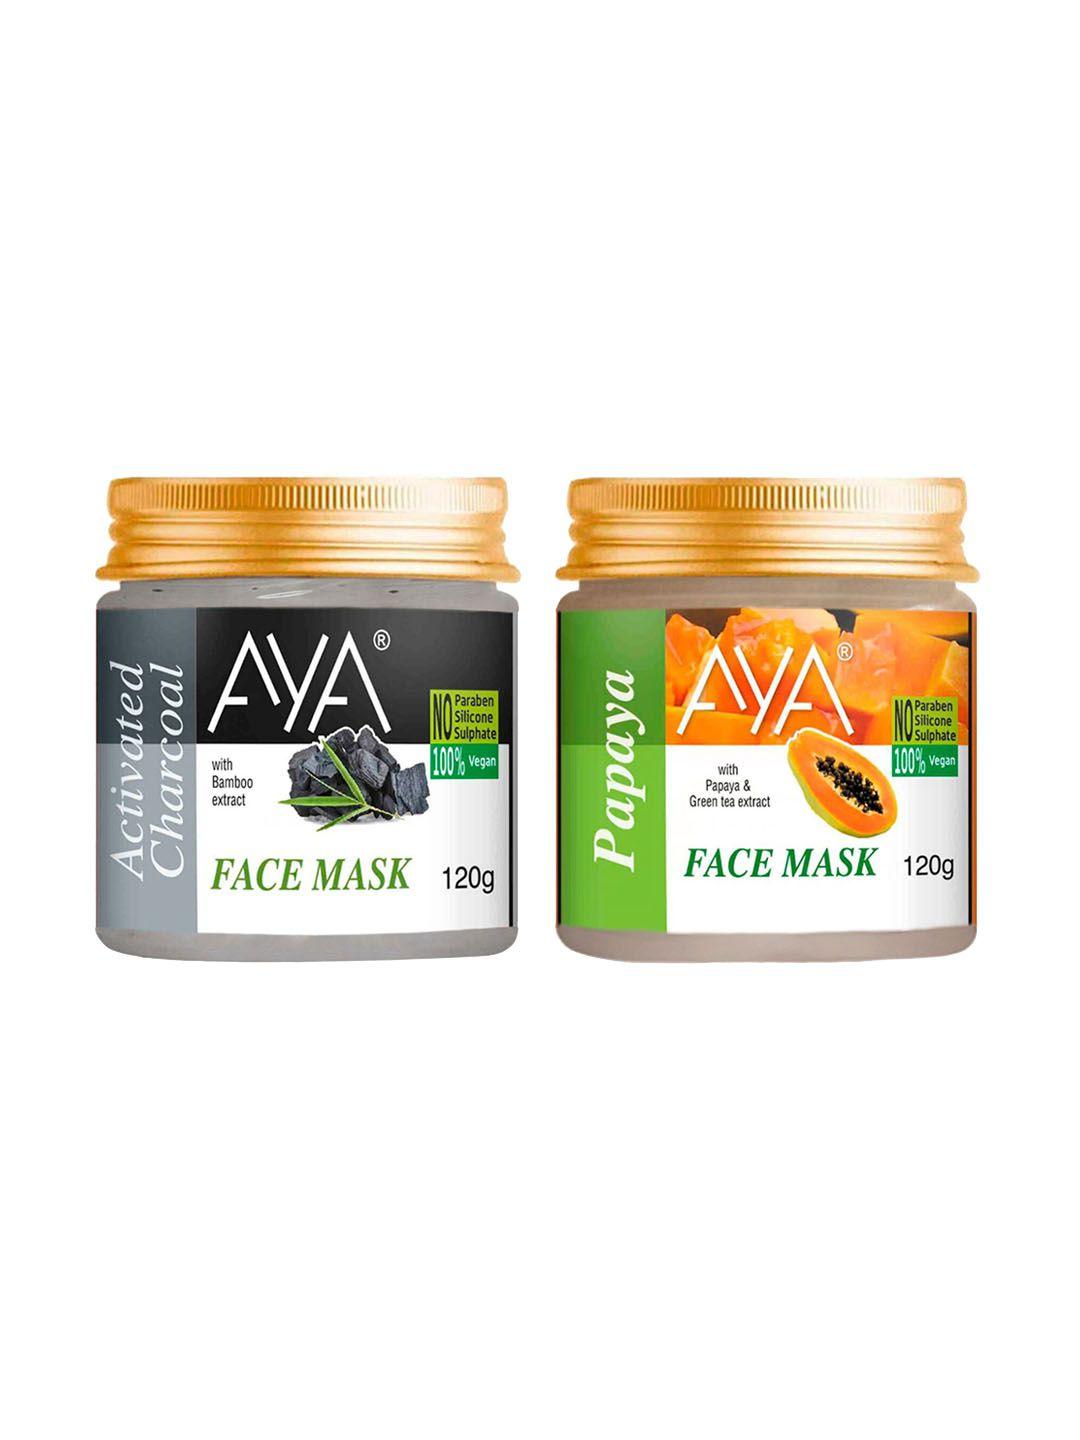 aya set of papaya & activated charcoal no paraben face mask - 120 g each